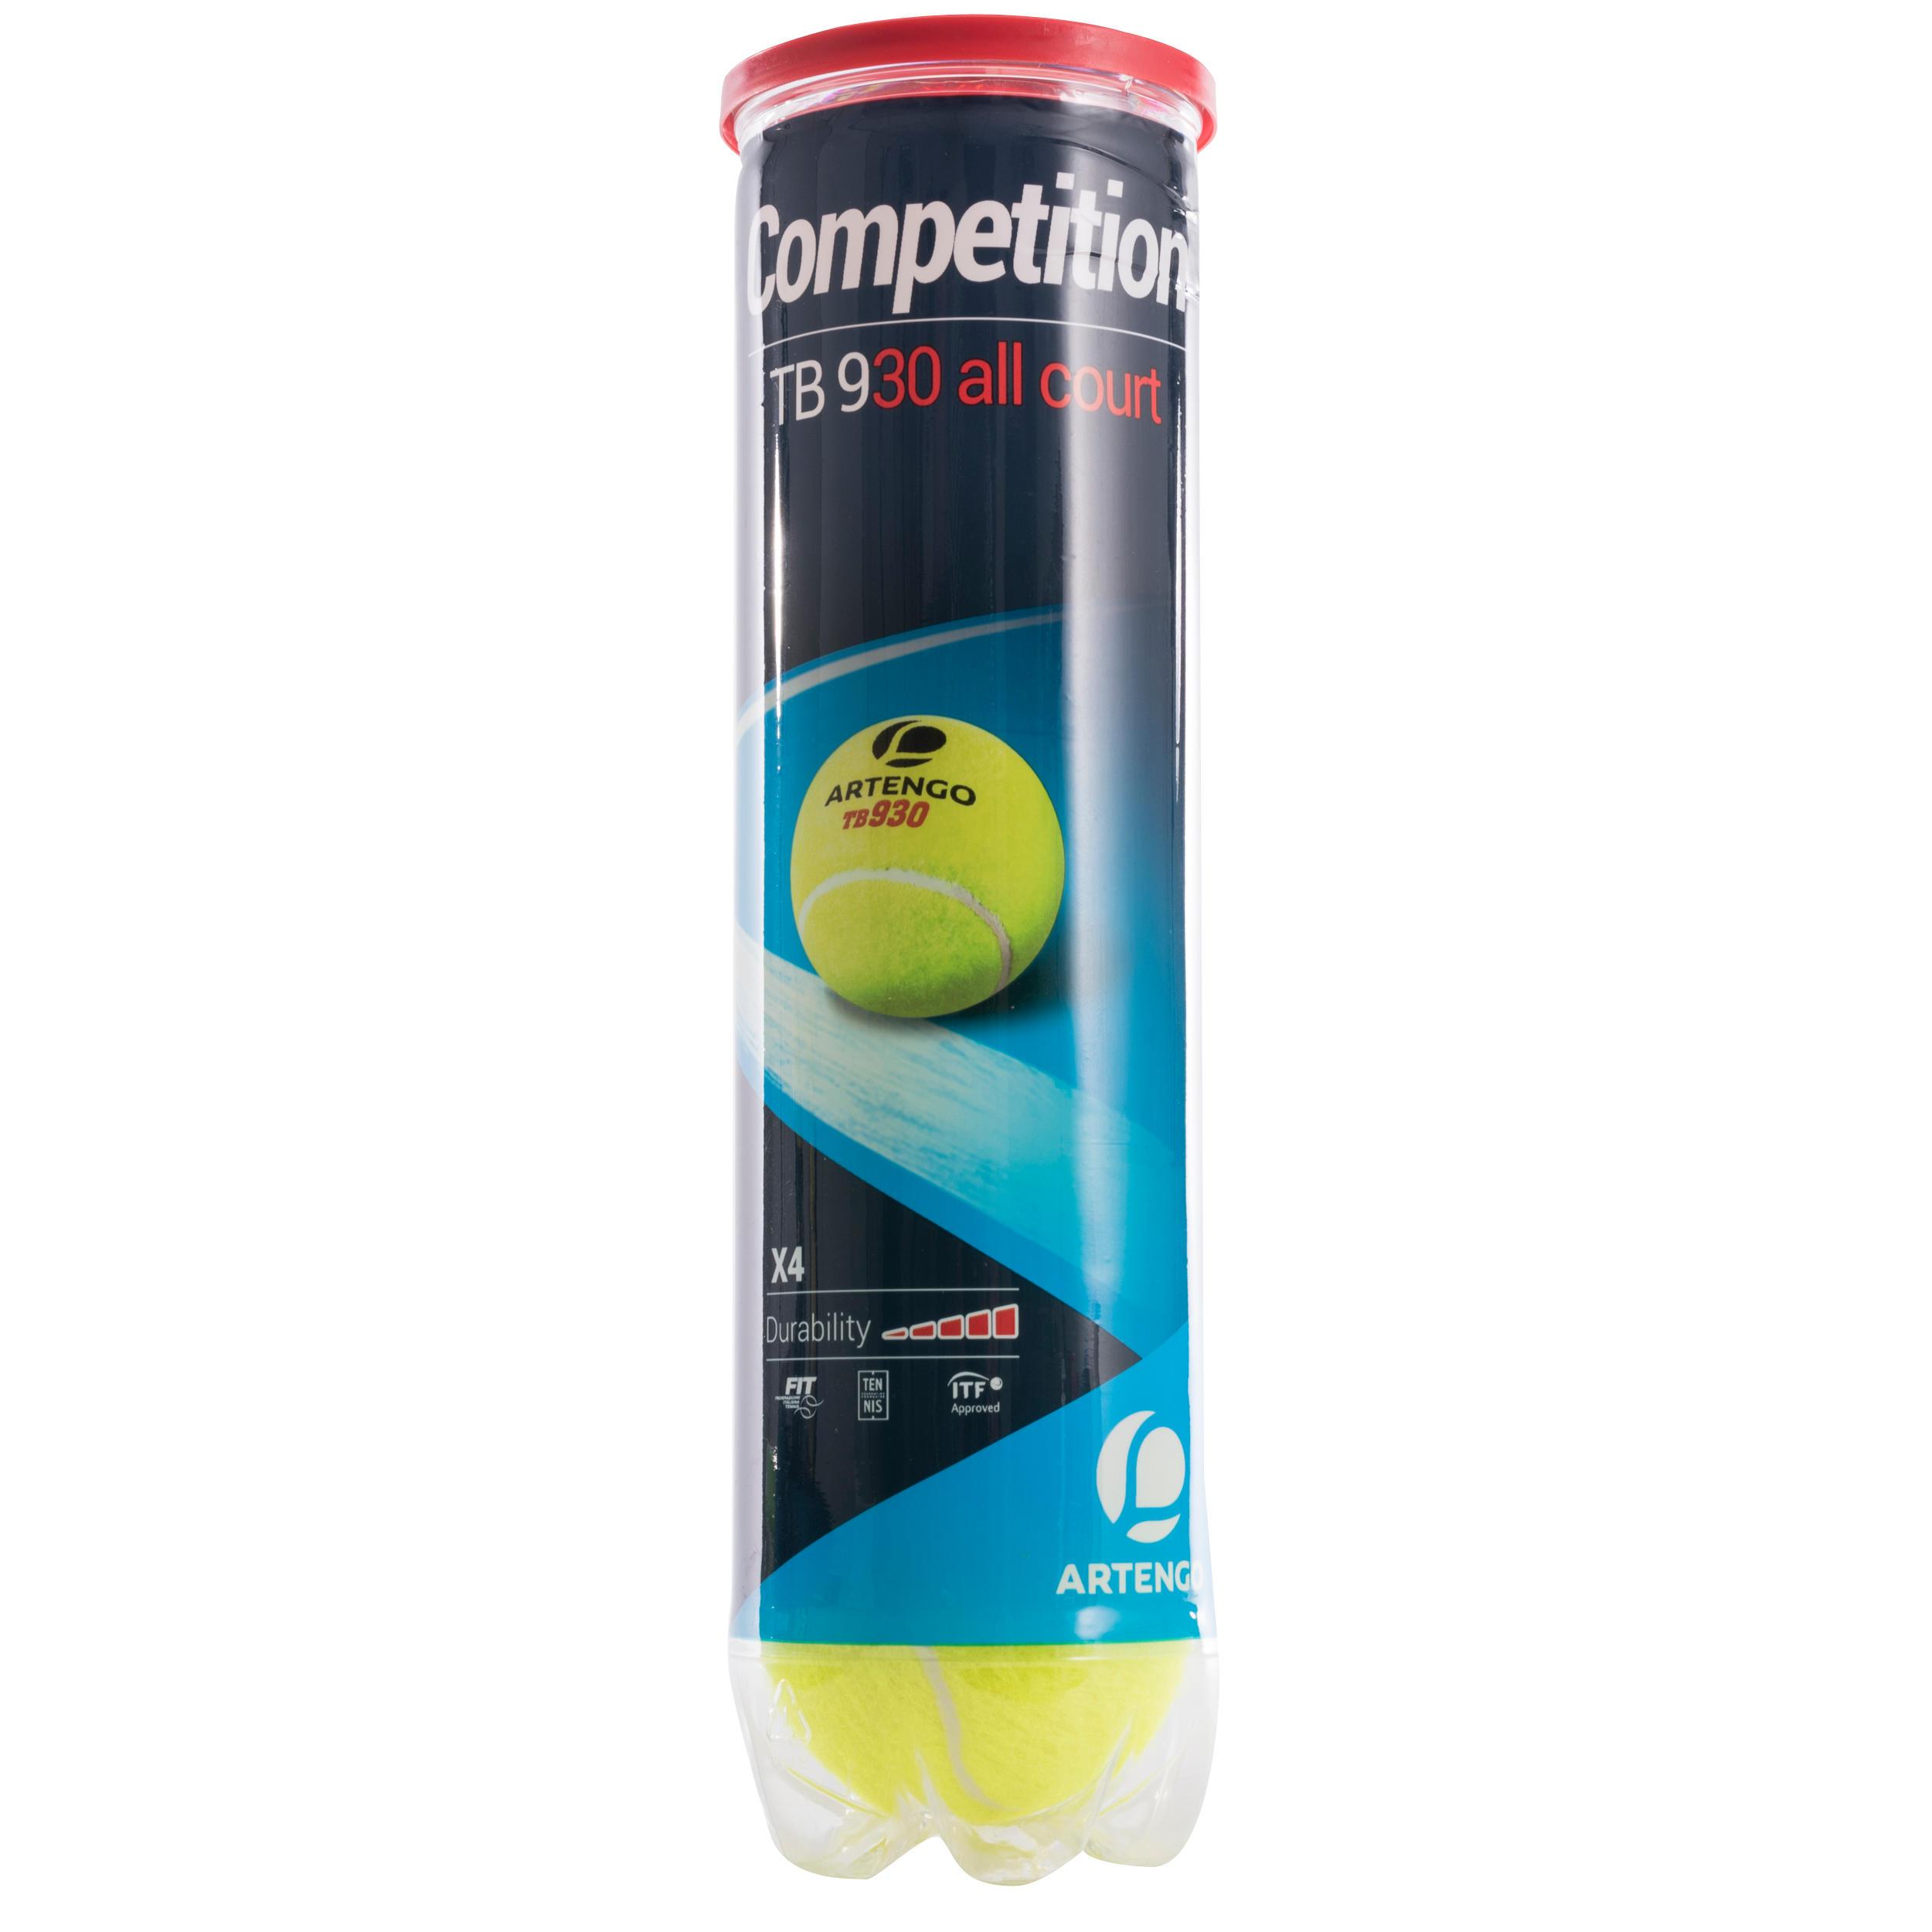 [ด่วน!! โปรโมชั่นมีจำนวนจำกัด] ลูกเทนนิสสำหรับการแข่ง TB930 (สีเหลือง) สำหรับ เทนนิส  สควอช  แบดบินตัน  … เทนนิส เทนนิส